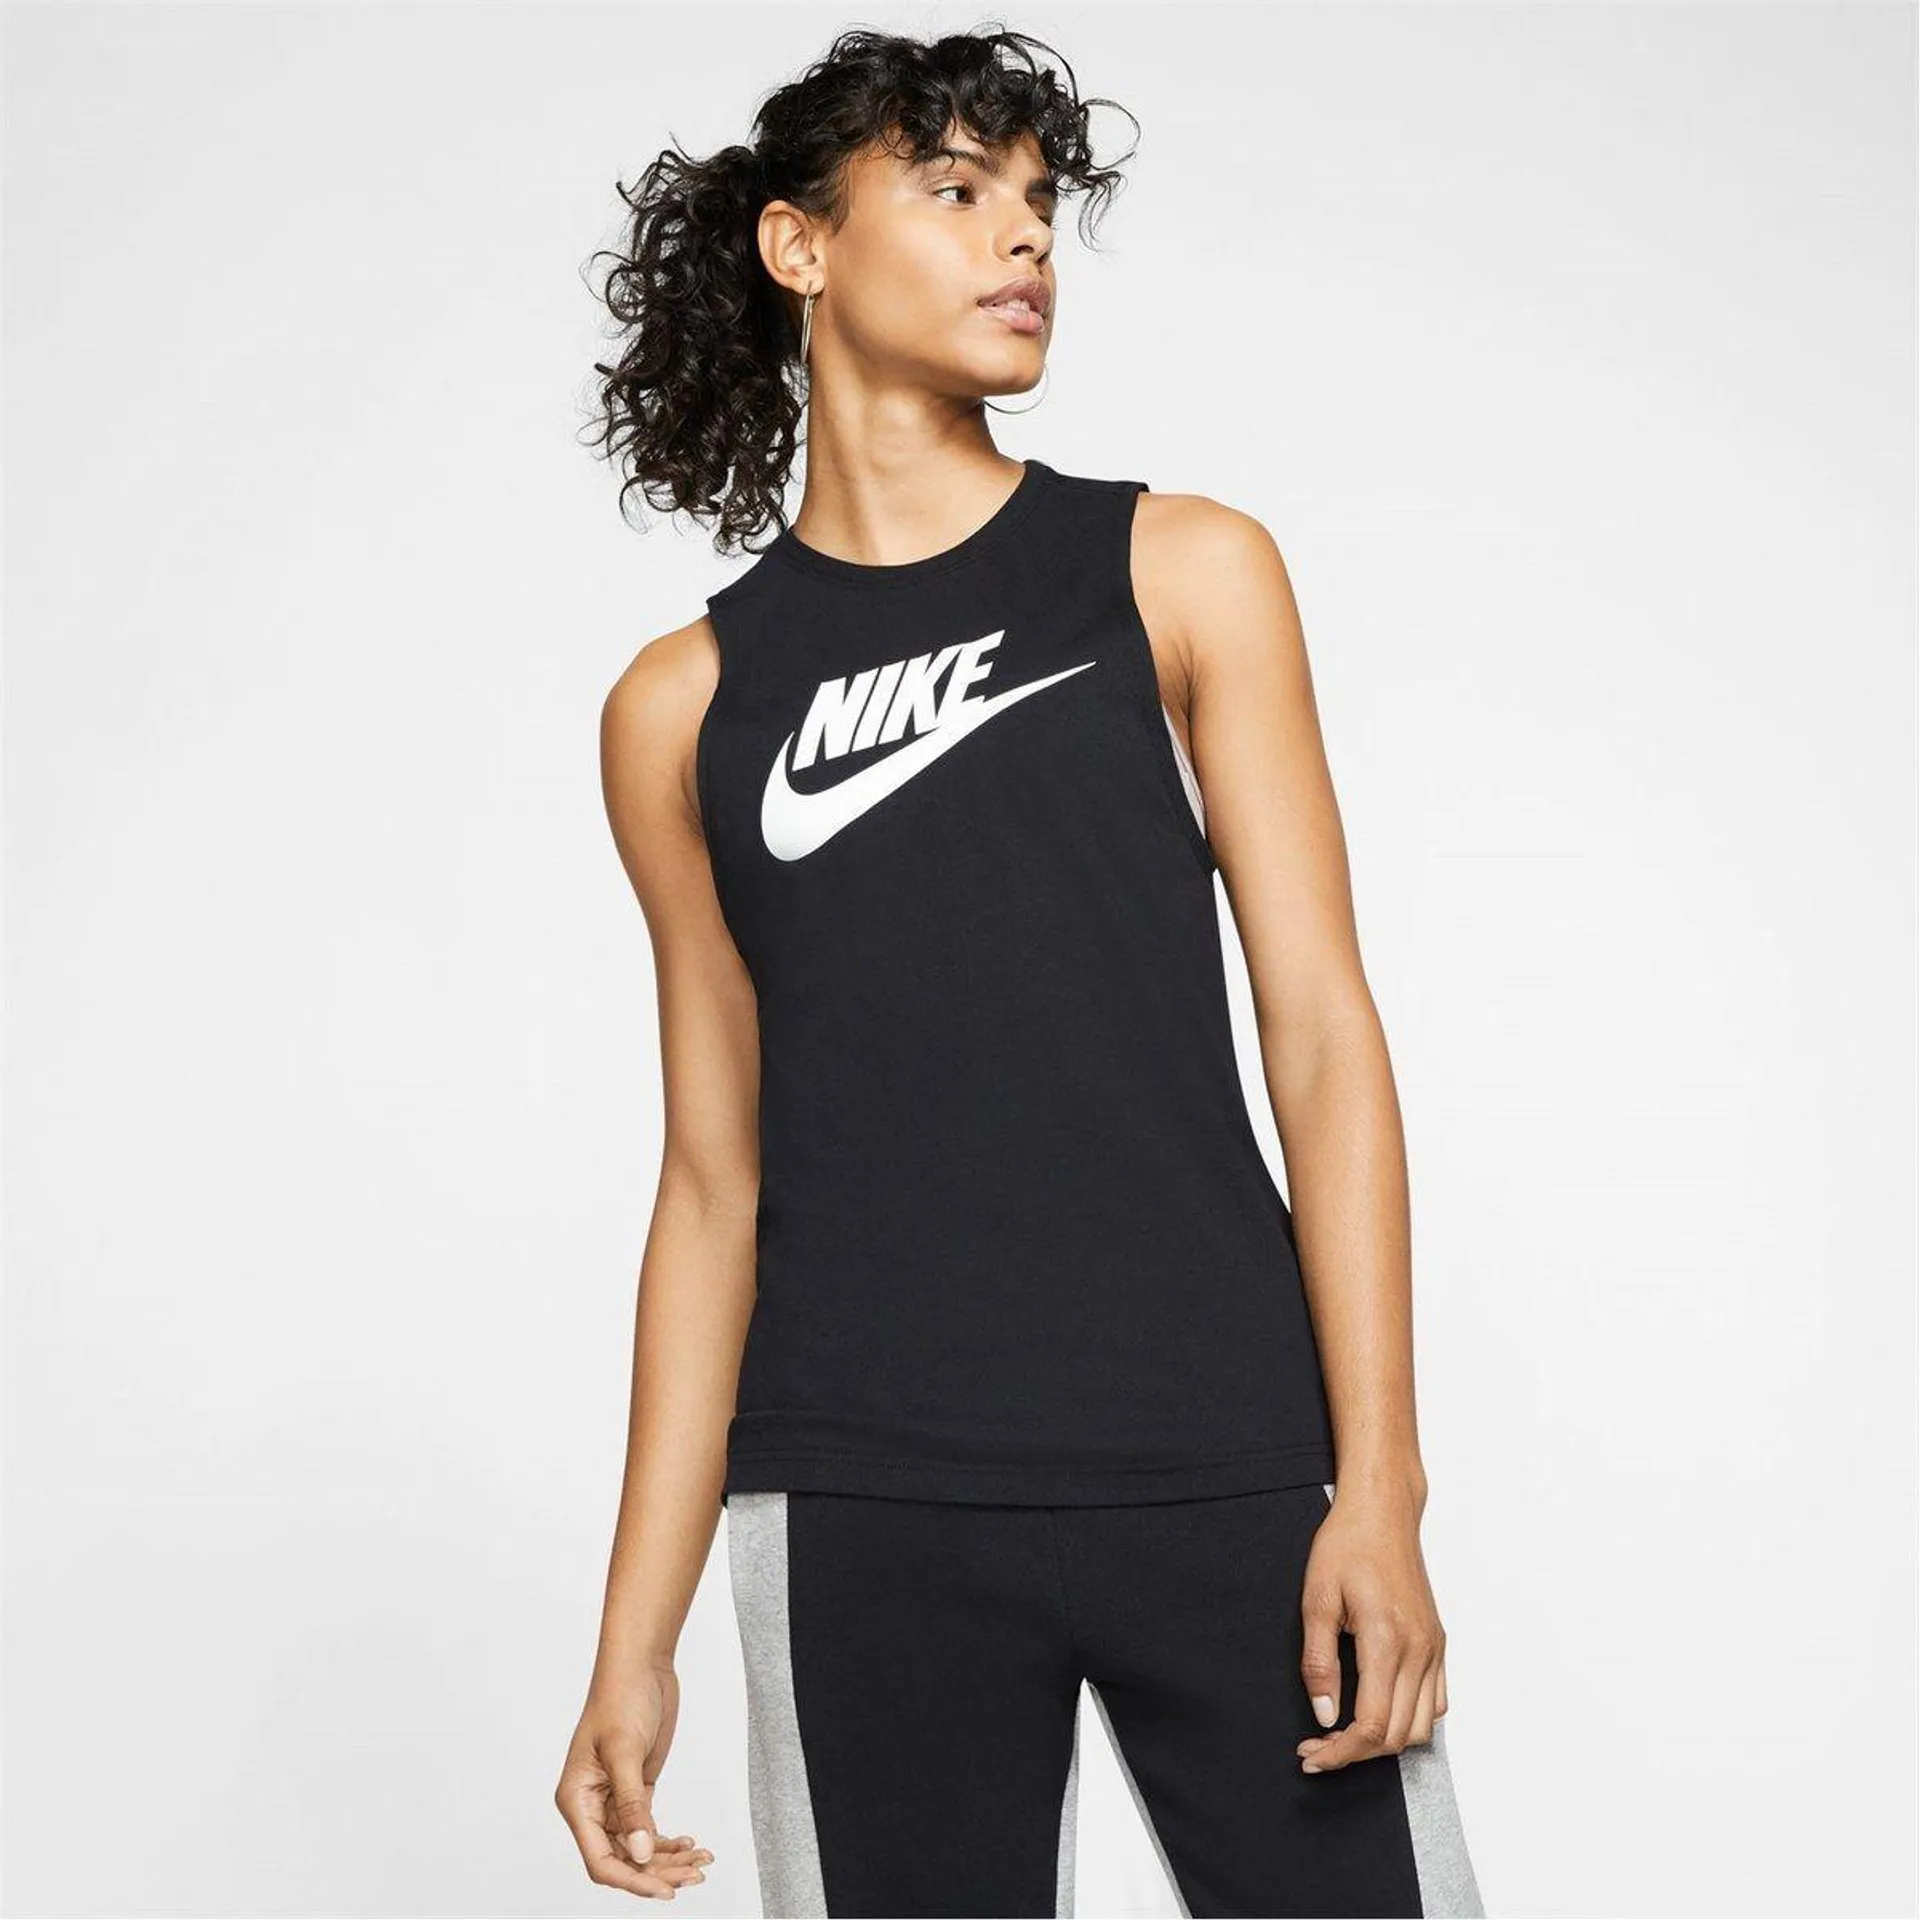 Nike Sportswear Womens Muscle Tank Top